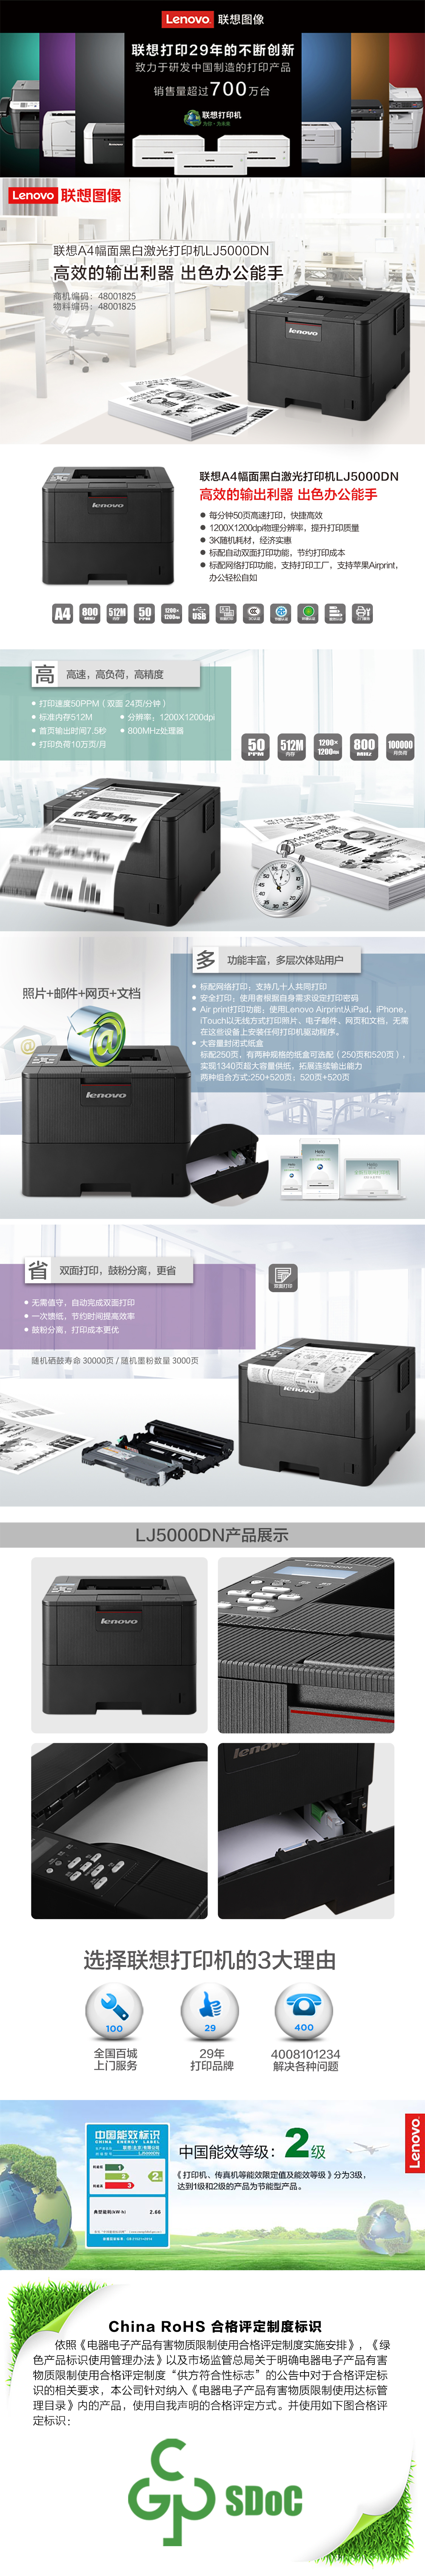 联想A4黑白激光打印机LJ5000DN